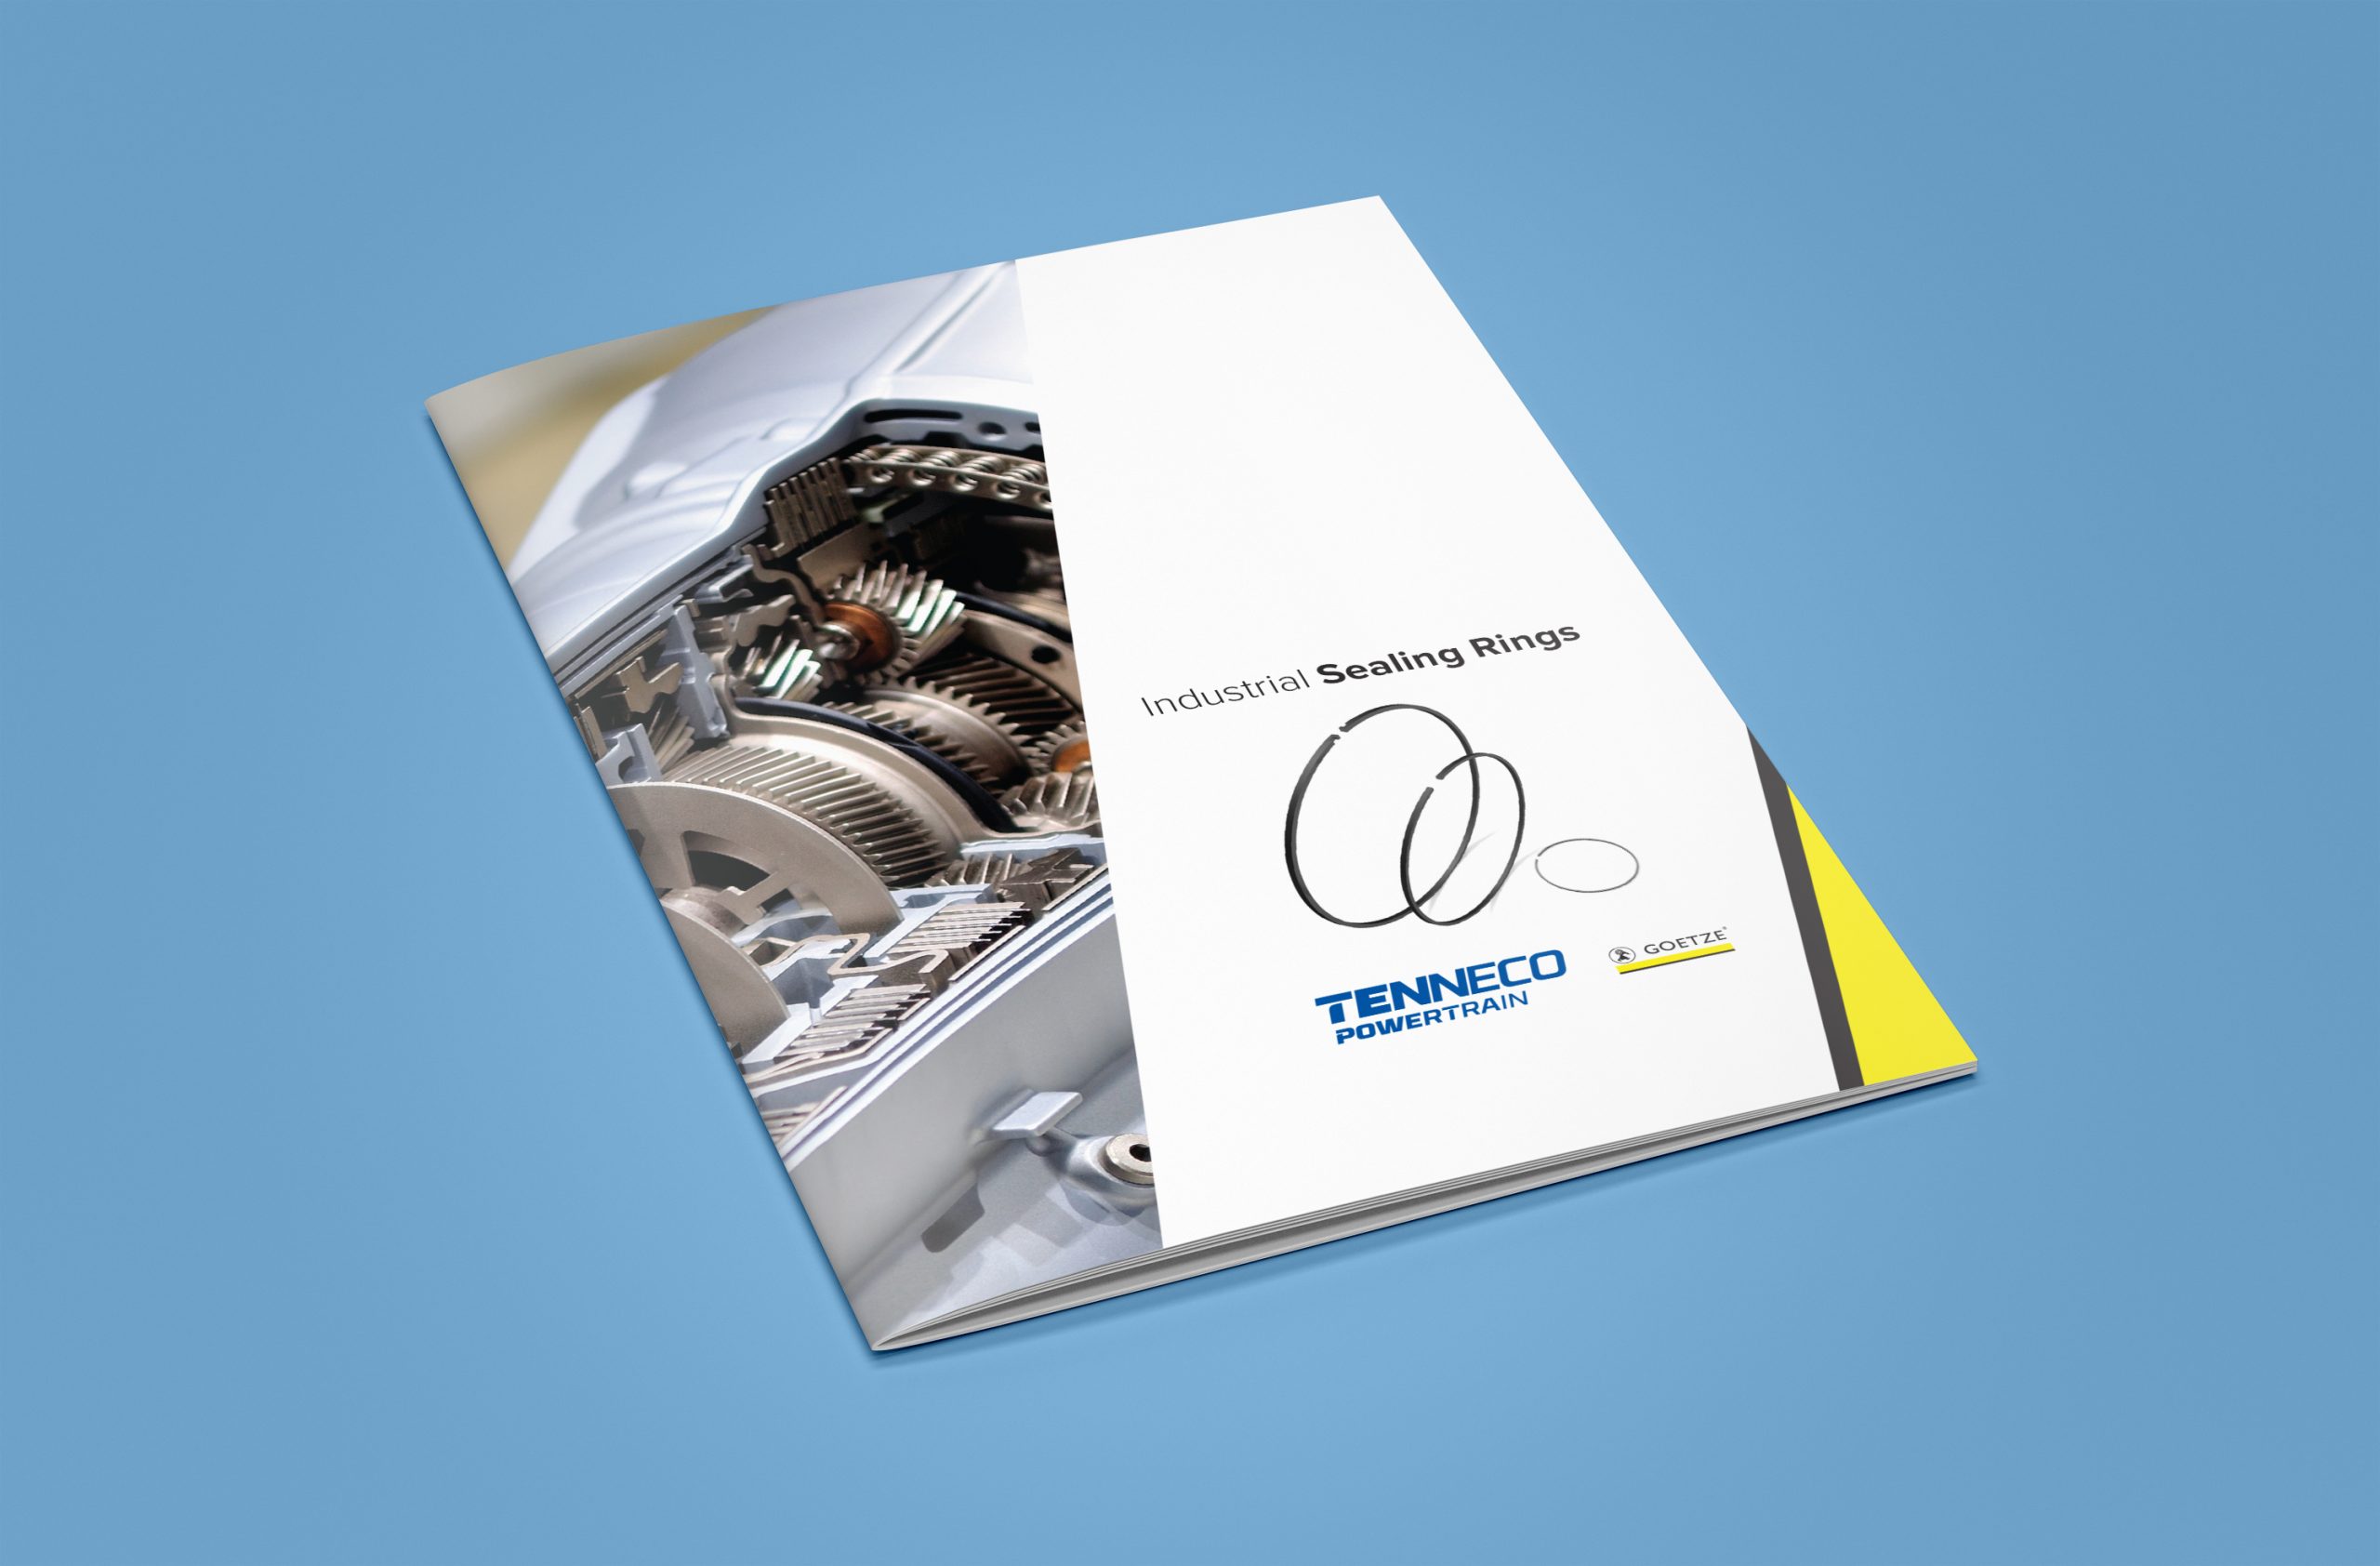 Goetze Industrial Sealing Rings Booklet